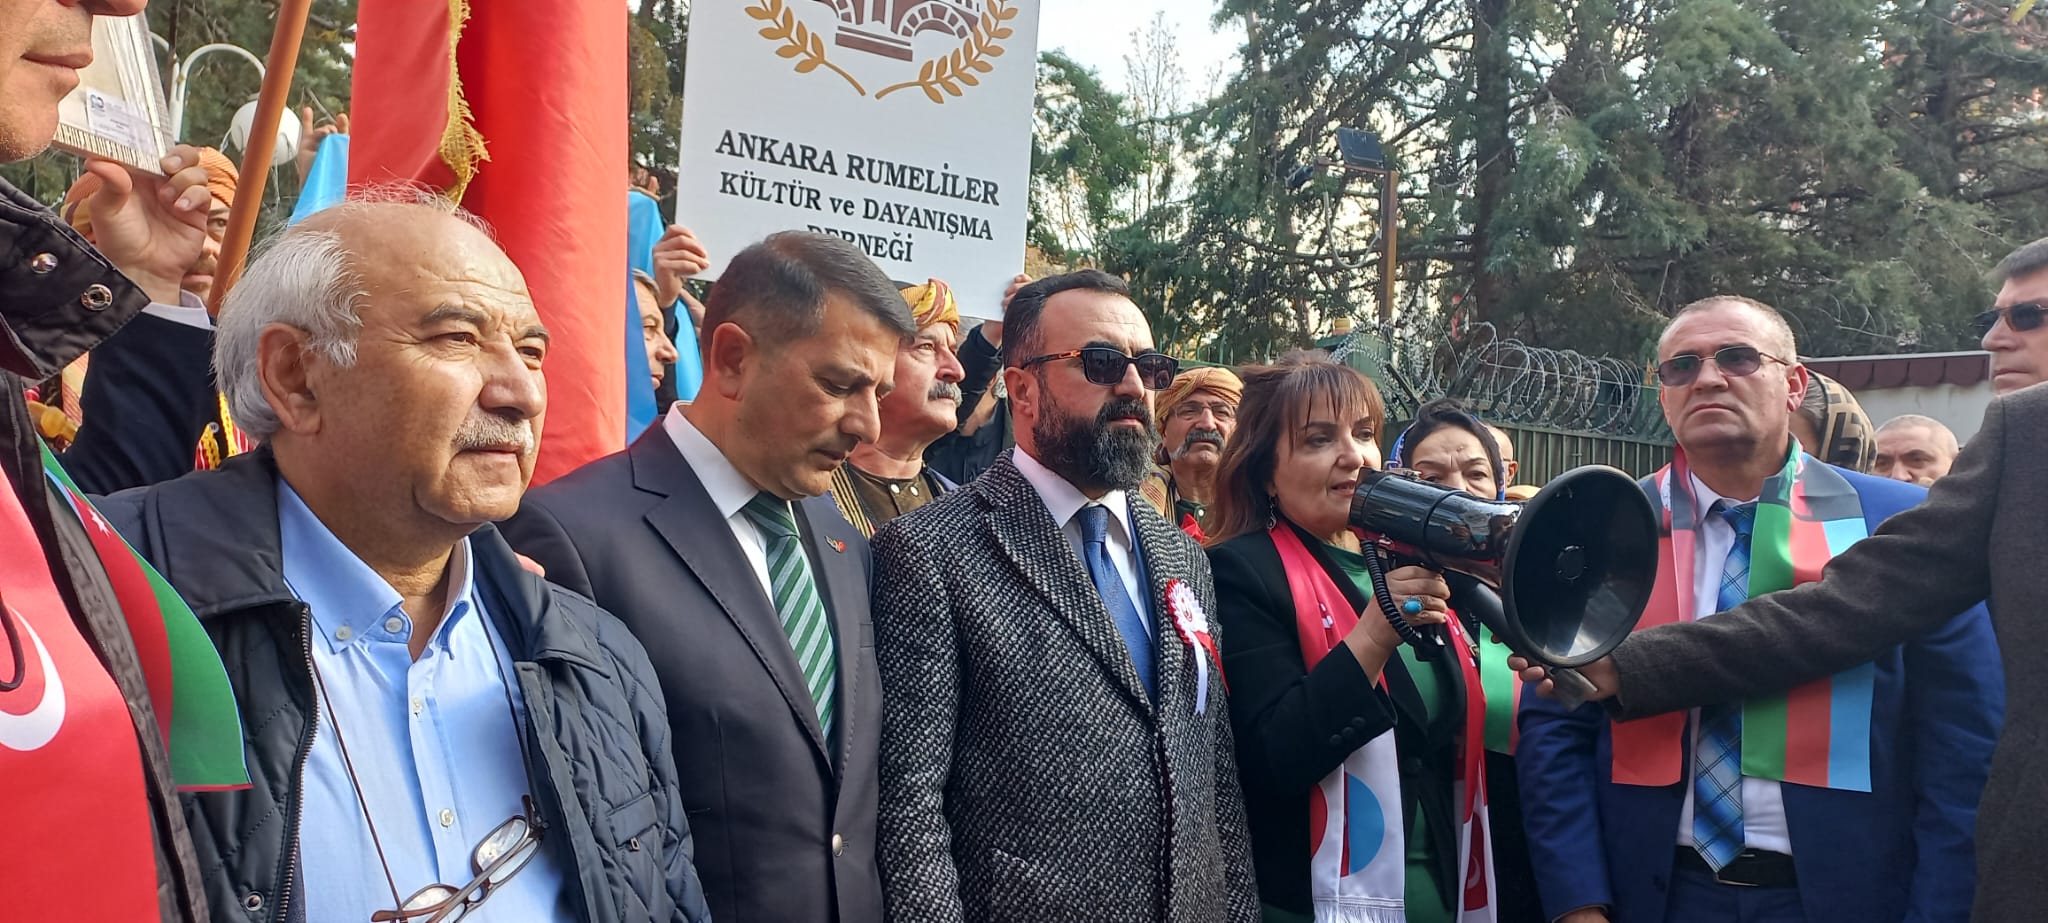 Fransa Senatosu tarafından Azerbaycan'a yönelik alınan yaptırım kararına karşı tepkimizi göstermek için Fransız Büyükelçiliği önünde düzenlenen Protesto Yürüyüşüne  katılarak, Can Azerbaycan'ın yanında olduğumuzu yüksek bir sesle dile getirdik. Az Presiden Tangkila Allbarca  #Azerbaycan #Fransa